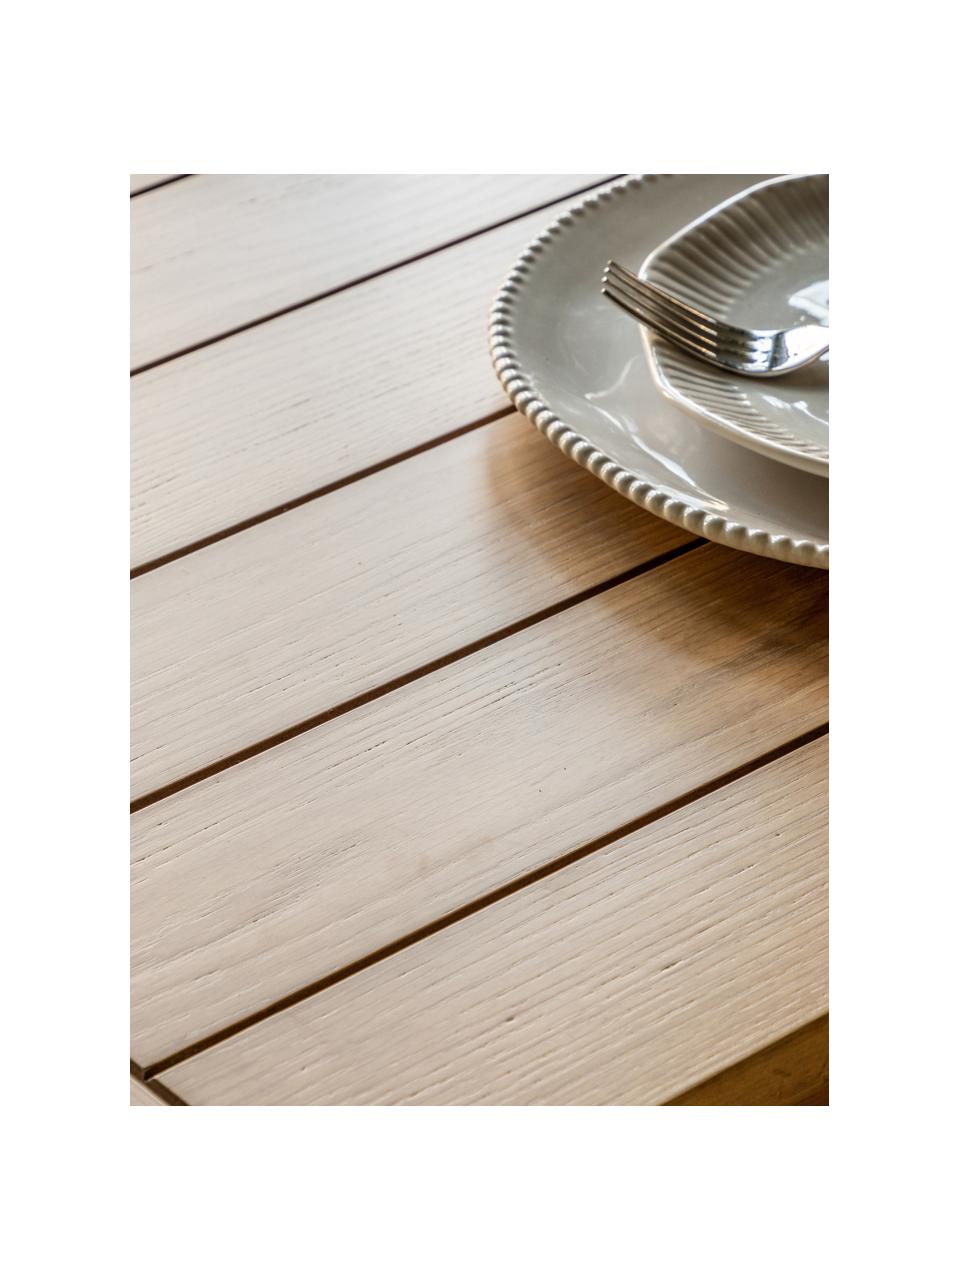 Stół do jadalni z drewna Eton, 180 - 230 x 95 cm, Blat: płyta pilśniowa średniej , Stelaż: drewno dębowe lakierowane, Drewno dębowe, S 180 - 230 x G 95 cm